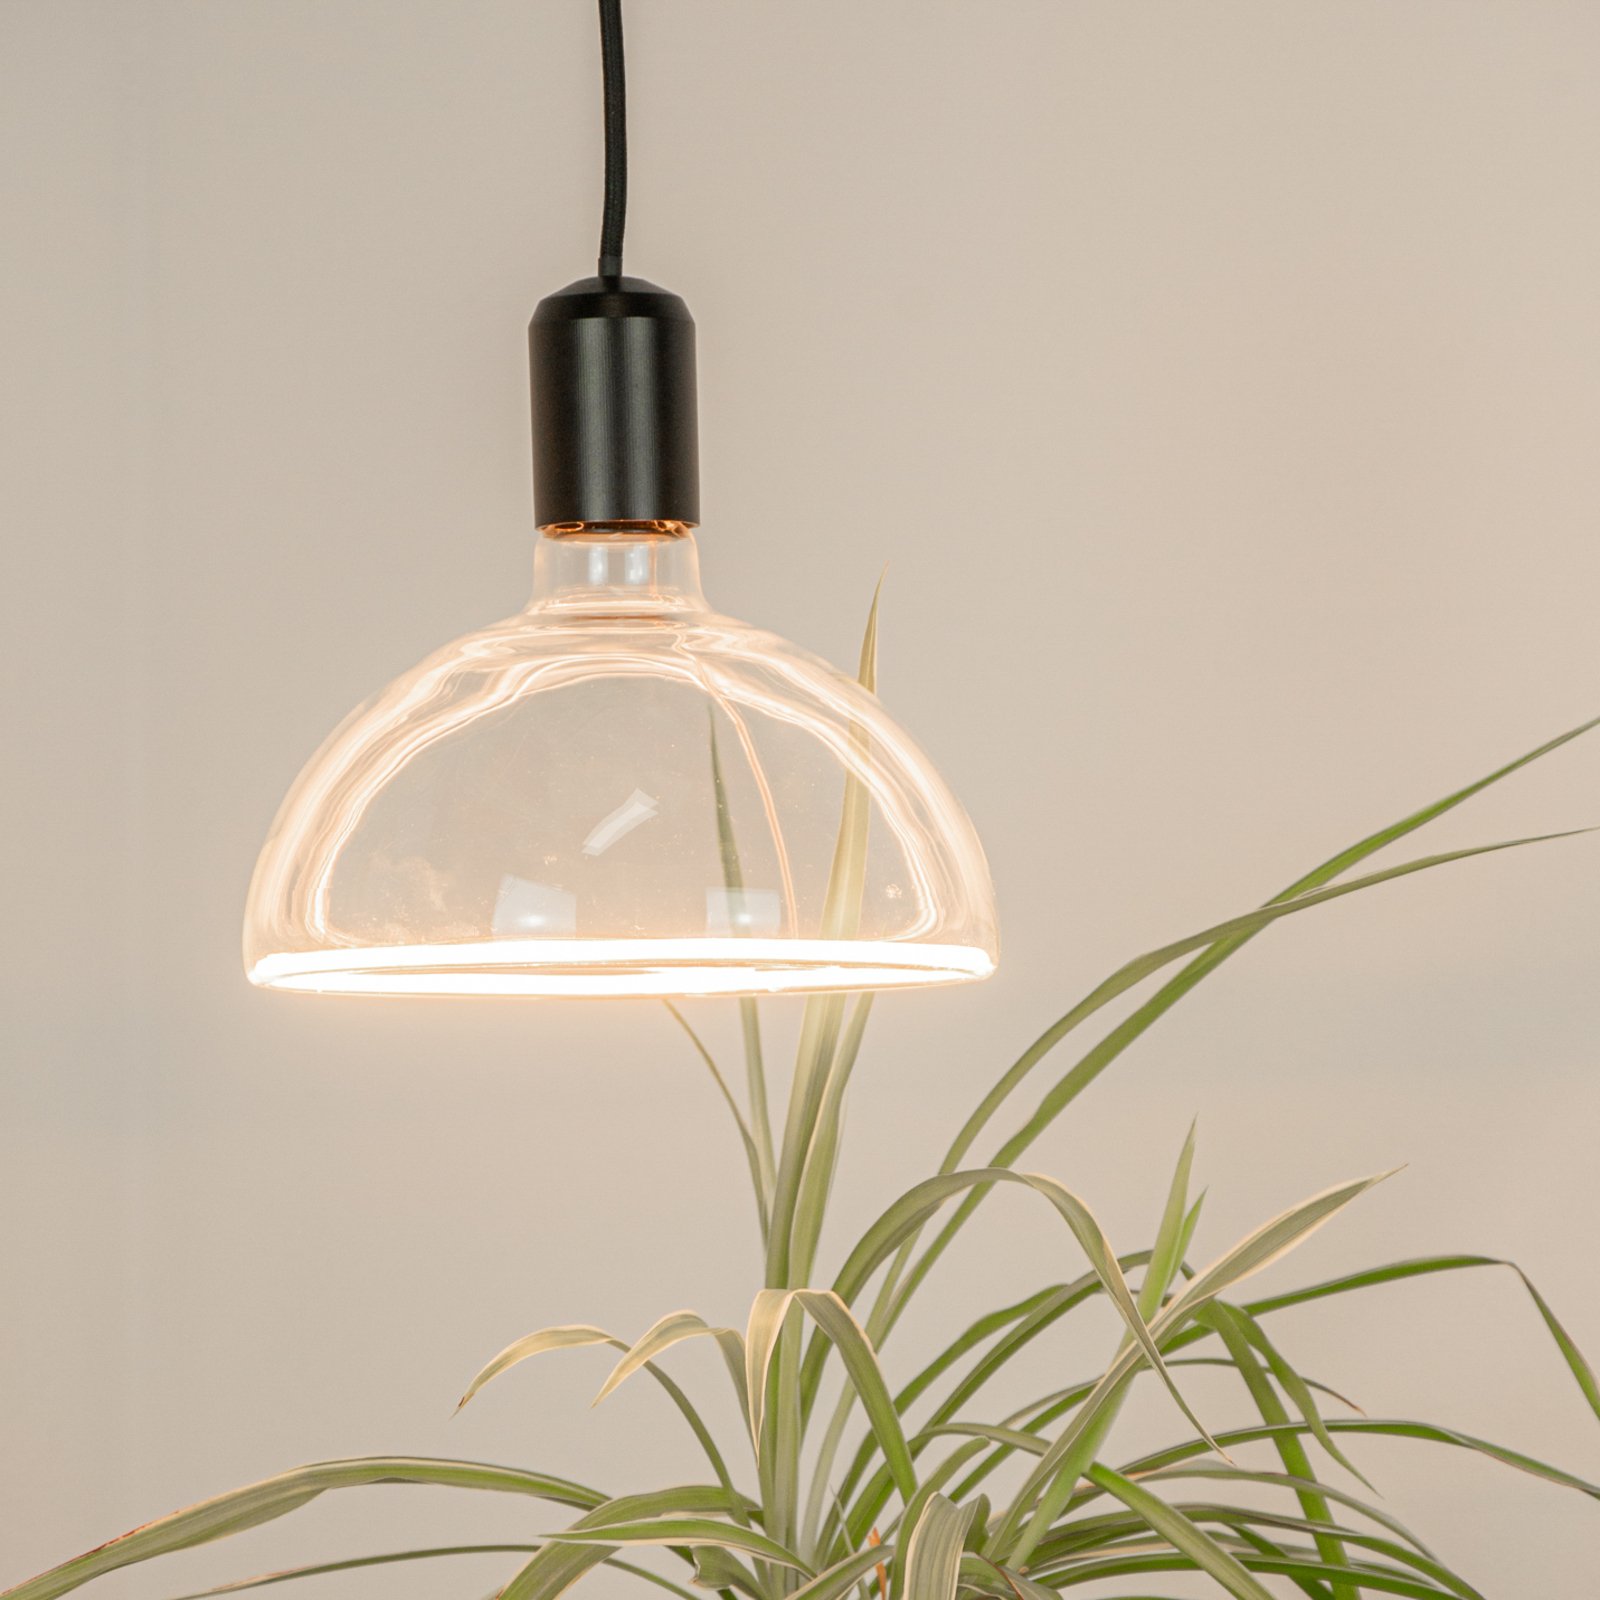 SEGULA LED lamp bowl E27 6,2W ambient dimbaar